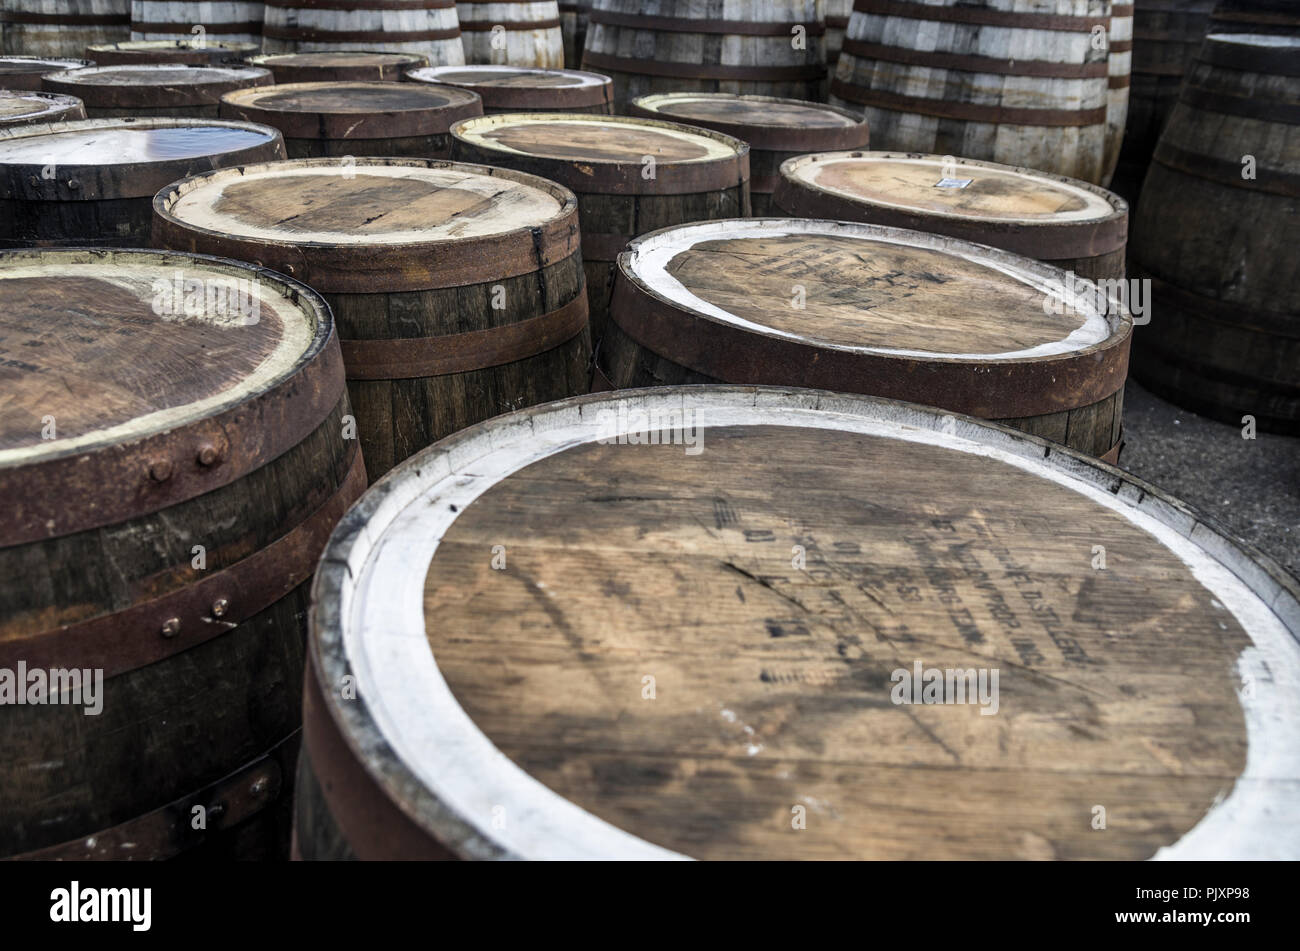 Vuoto barili di Whisky alla distilleria Ardbeg, Islay, Scozia Foto Stock